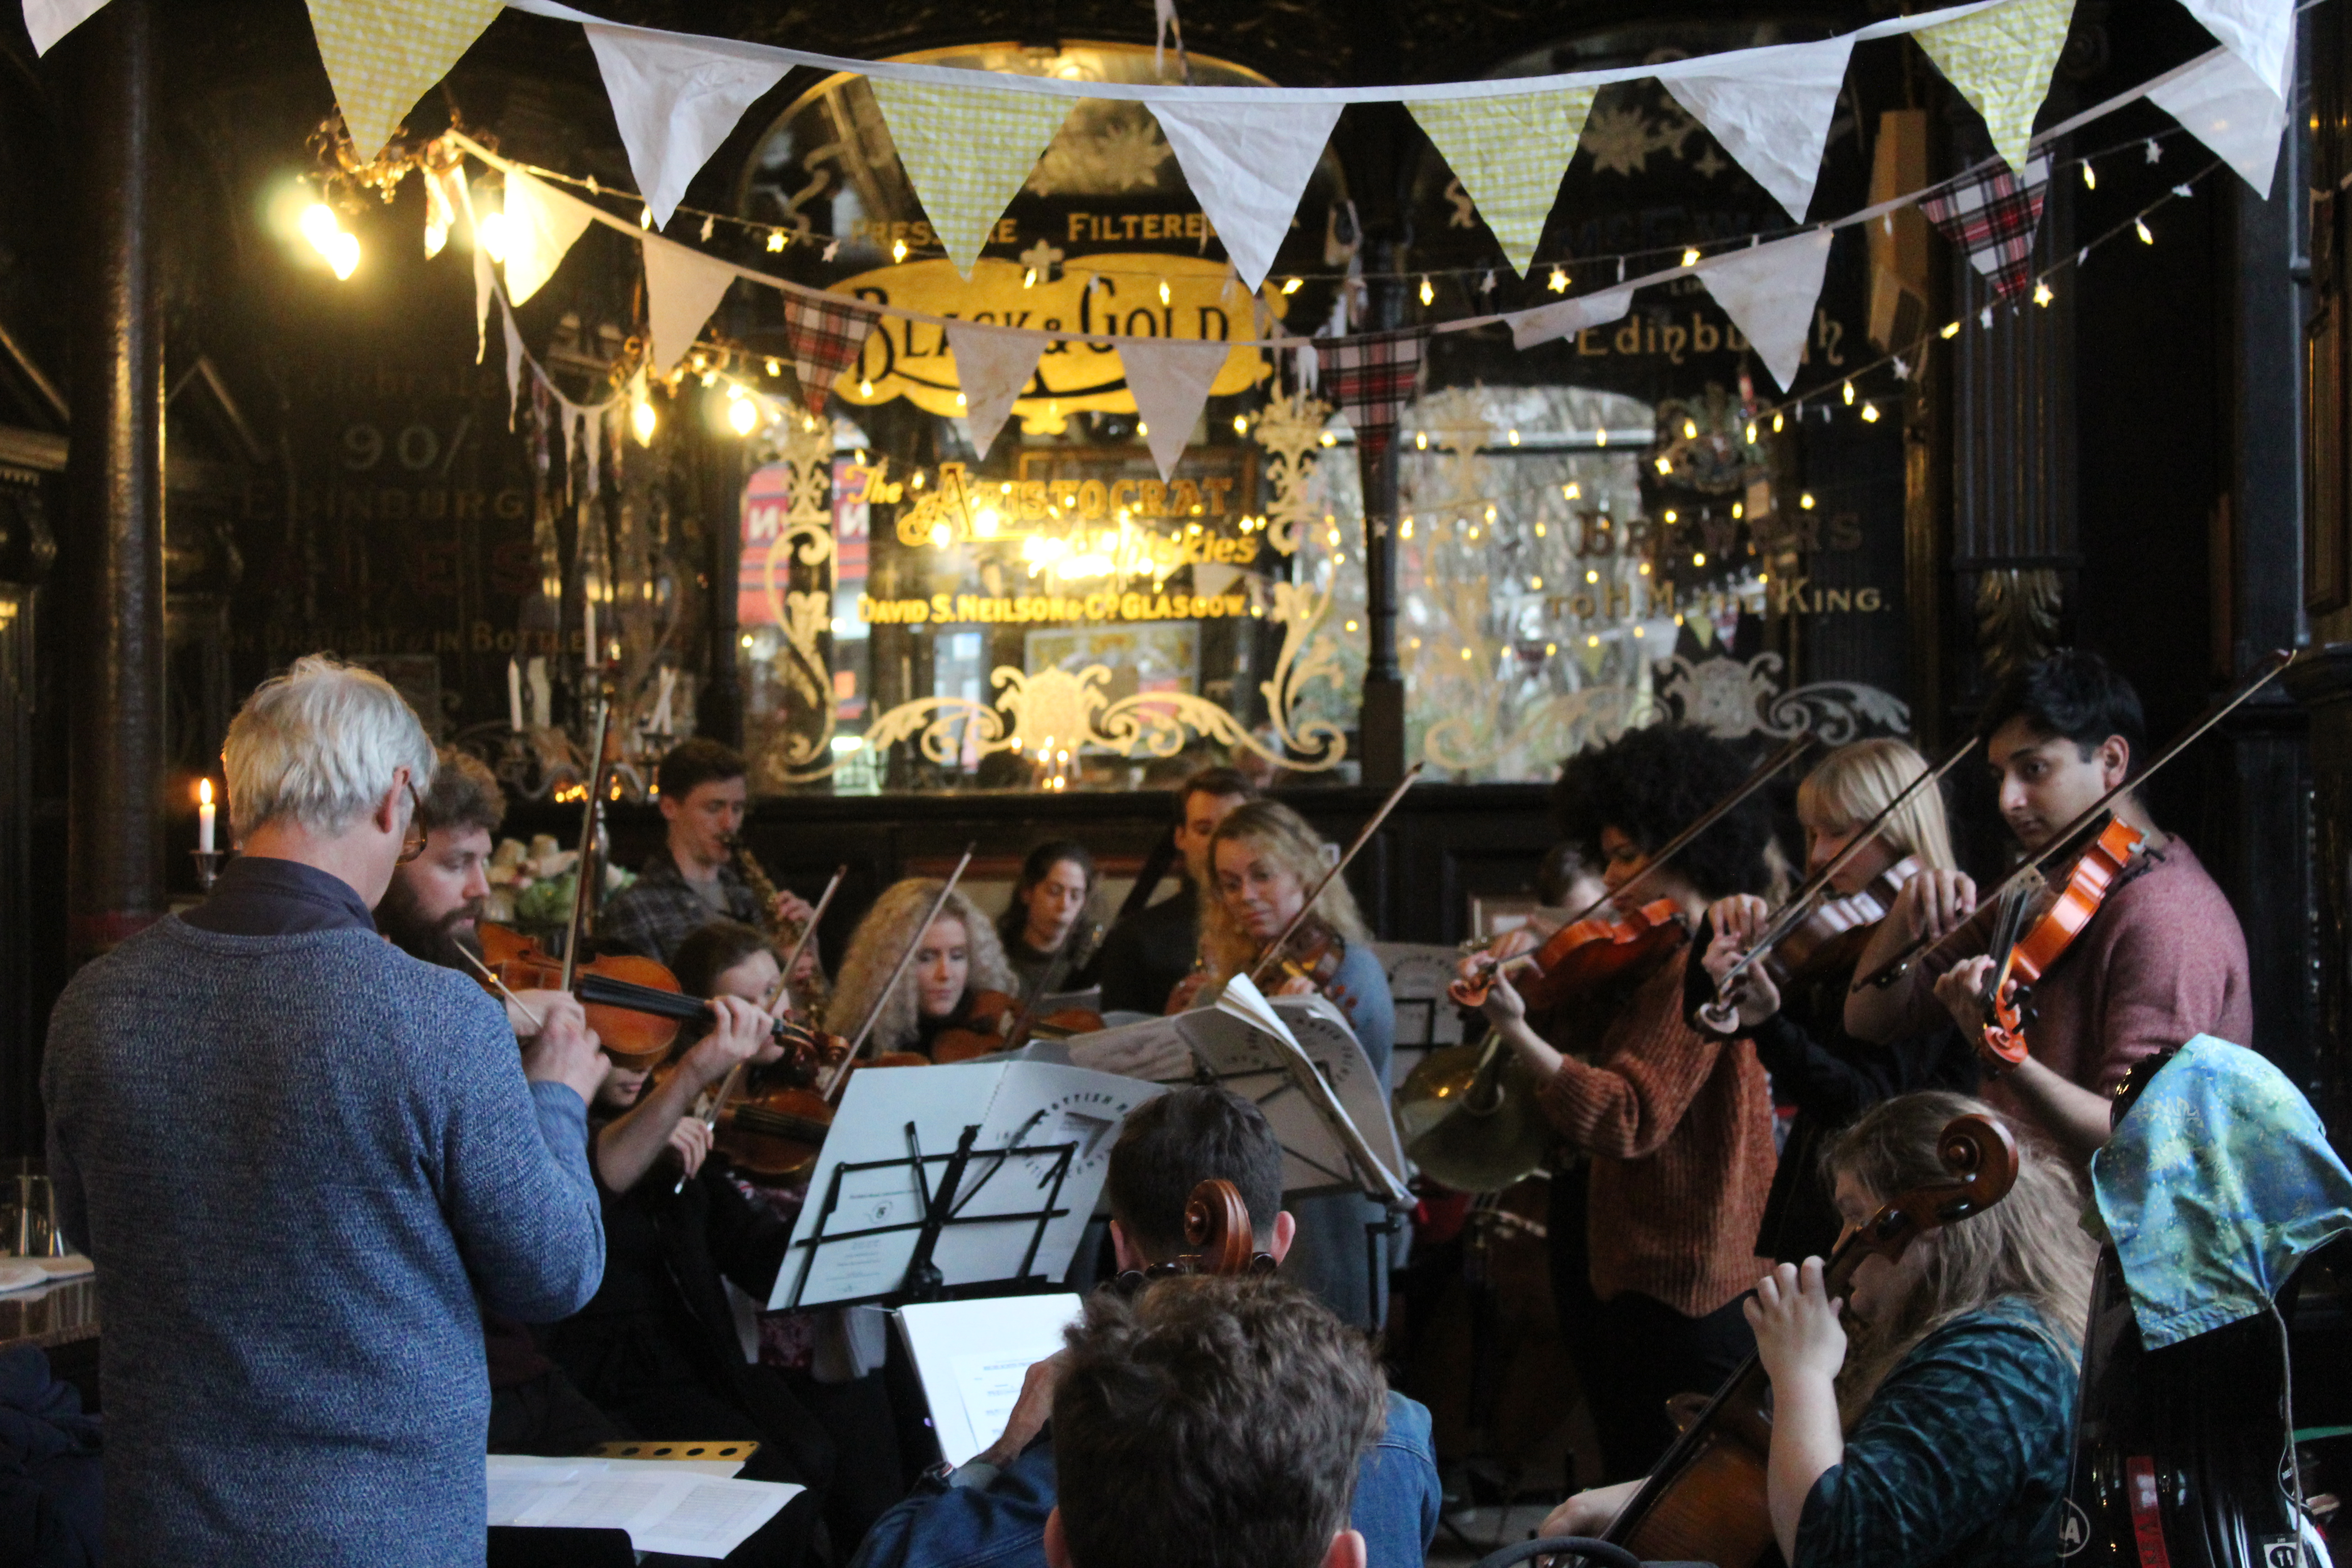 Govan orchestra boosts community spirits